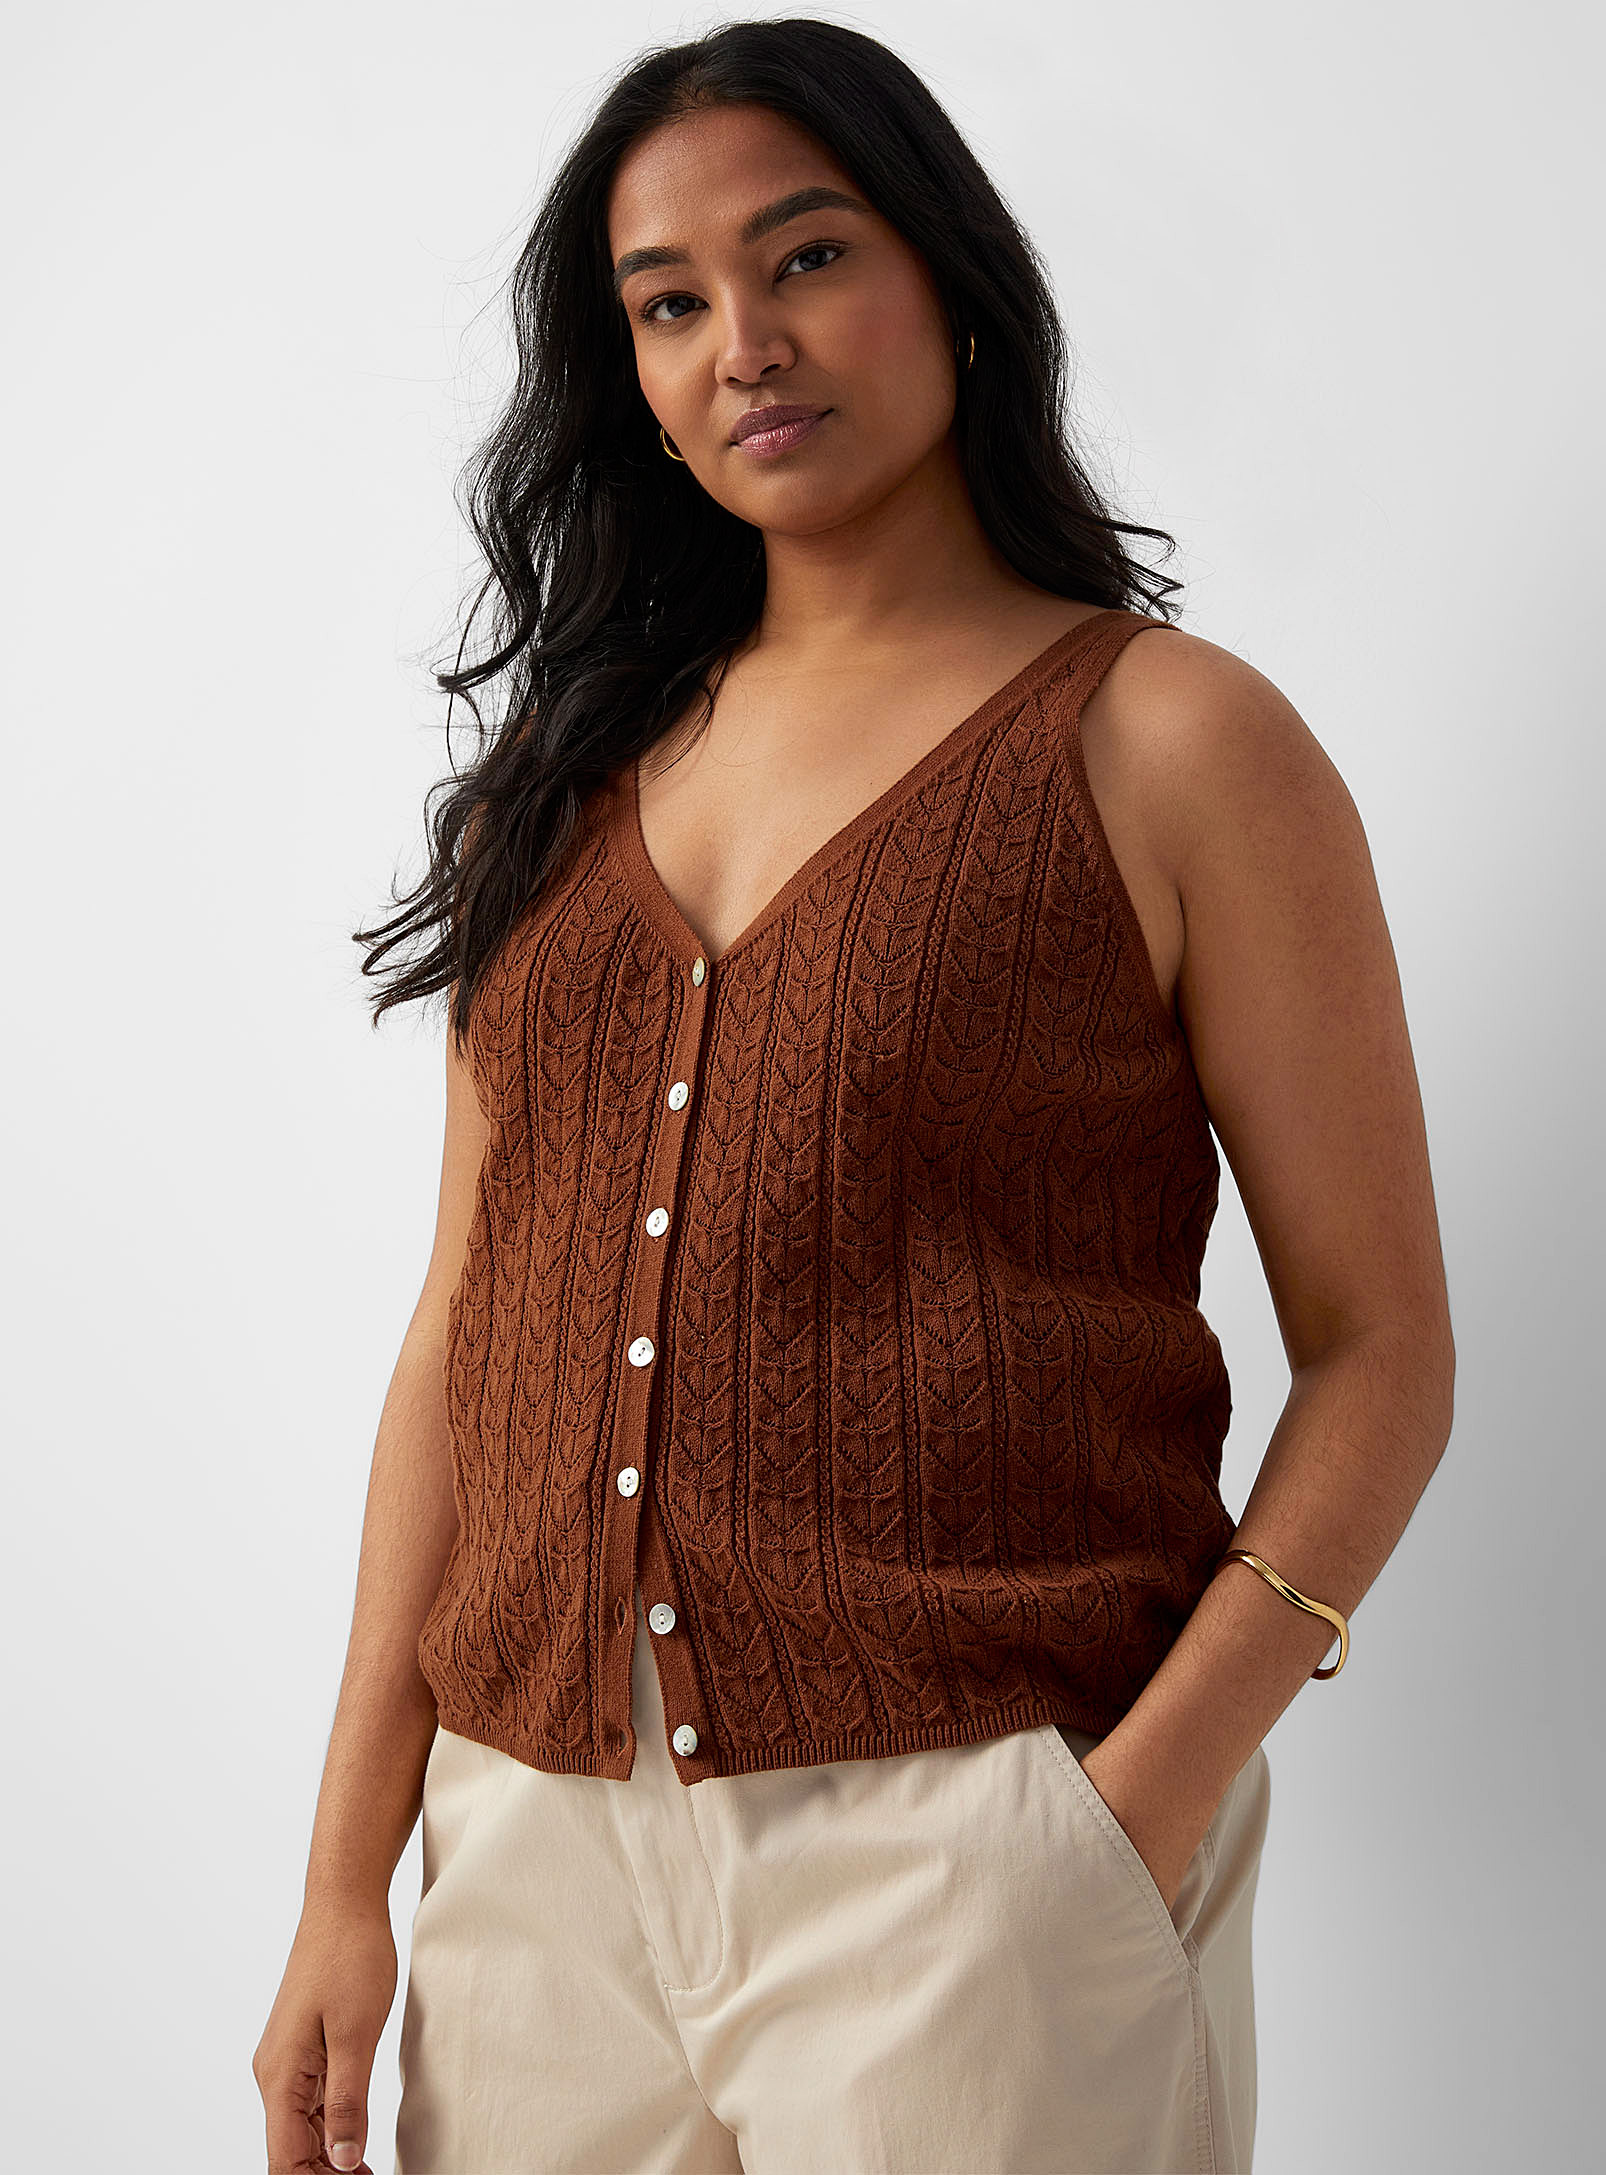 Contemporaine - Women's Pointelle knit buttoned sweater vest